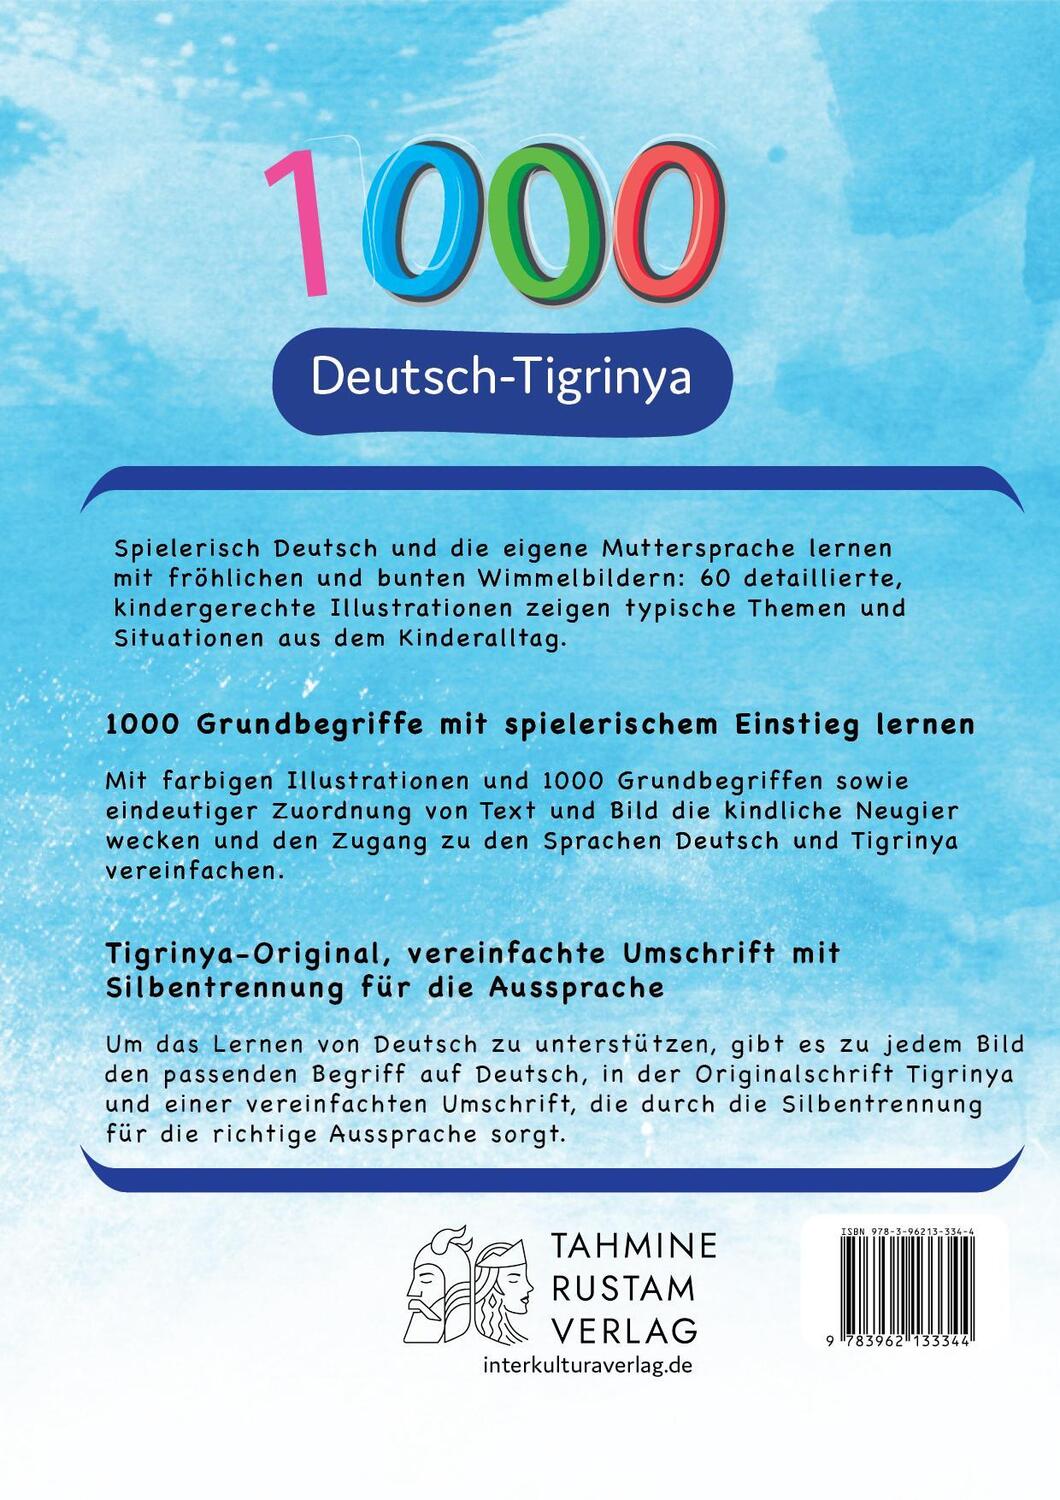 Rückseite: 9783962133344 | Interkultura Meine ersten 1000 Wörter Bildwörterbuch Deutsch-Tigrinya